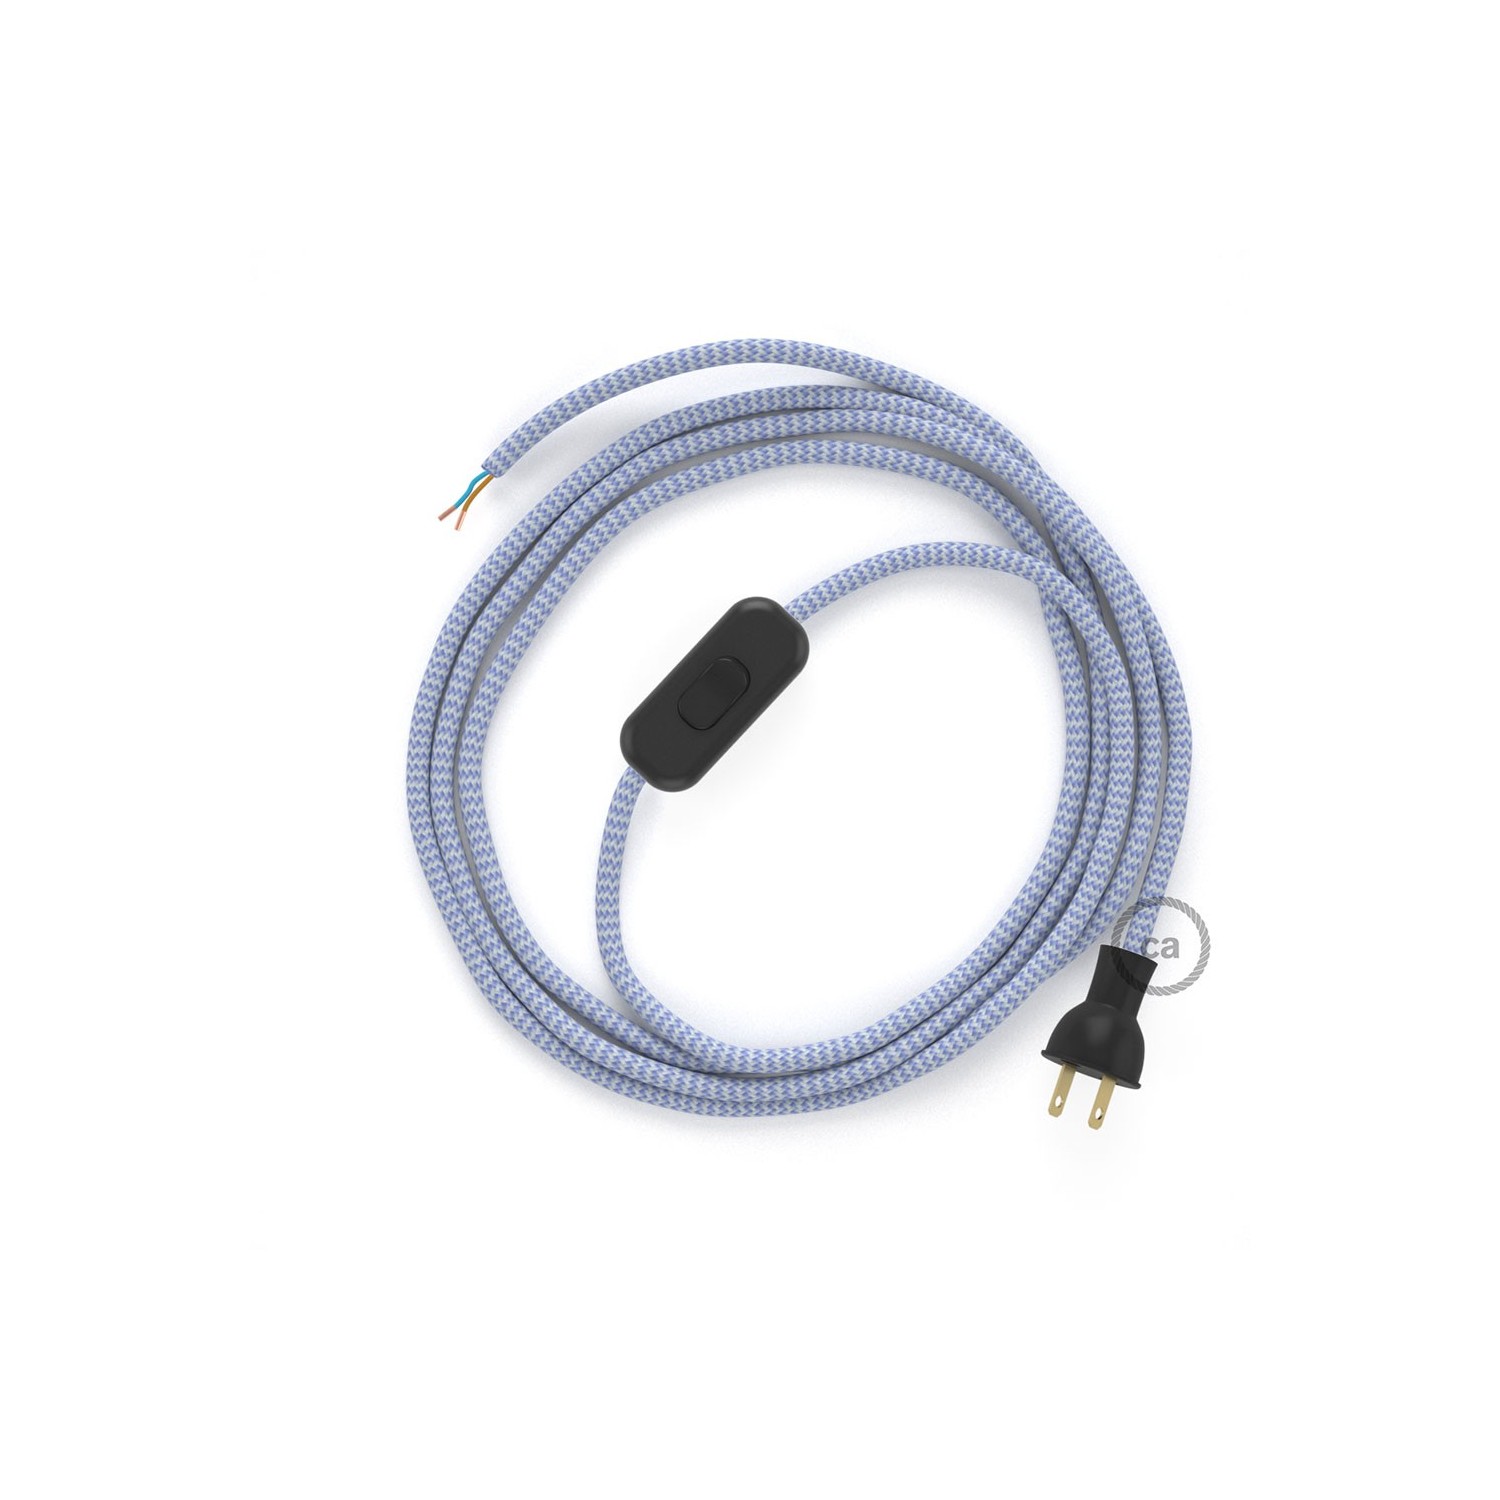 Cableado para lámpara de mesa, cable RZ07 Rayón ZigZag Blanco Lila 1,8 m. Elige el color de la clavija y del interruptor!